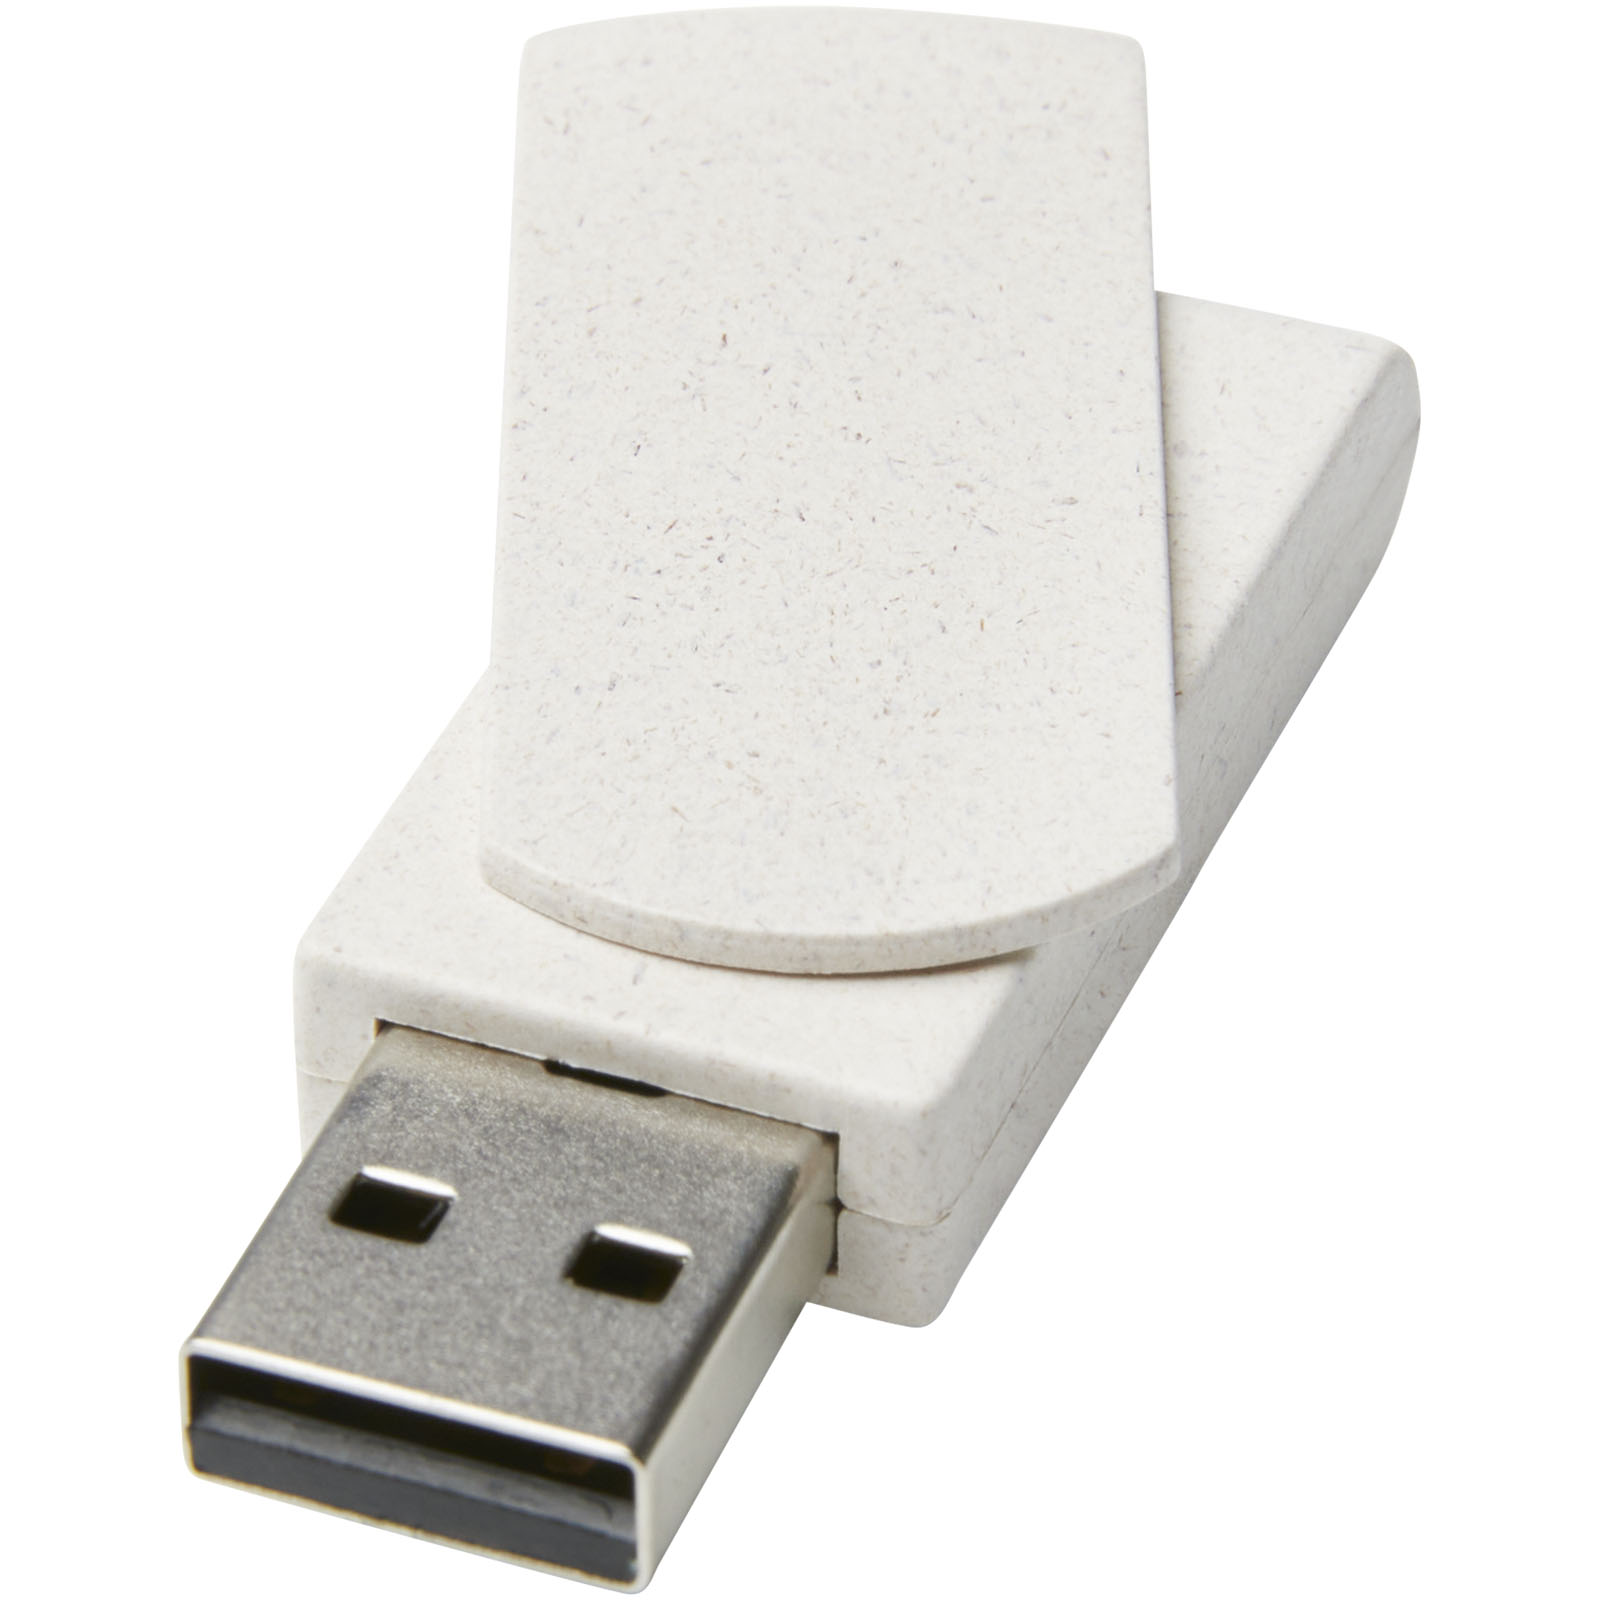 USB Flash Drives - Rotate 4GB wheat straw USB flash drive